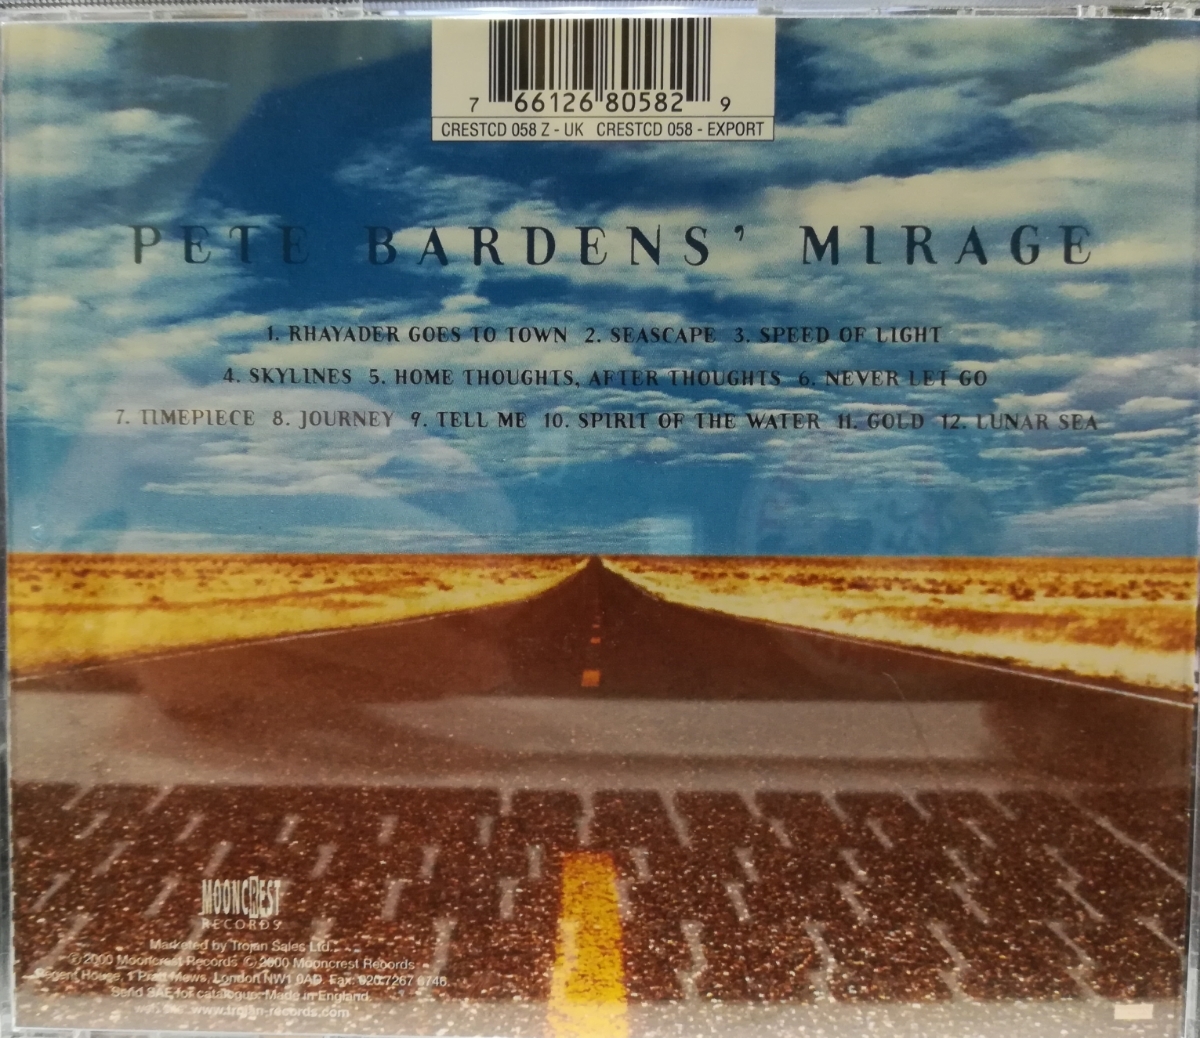 【特価/希少/輸入盤】ピート・バーデンス・ミラージュ / スピード・オブ・ライト -ライブ- (1996) / 0766126805829 / PETE BARDEN'S MIRAGE_画像5